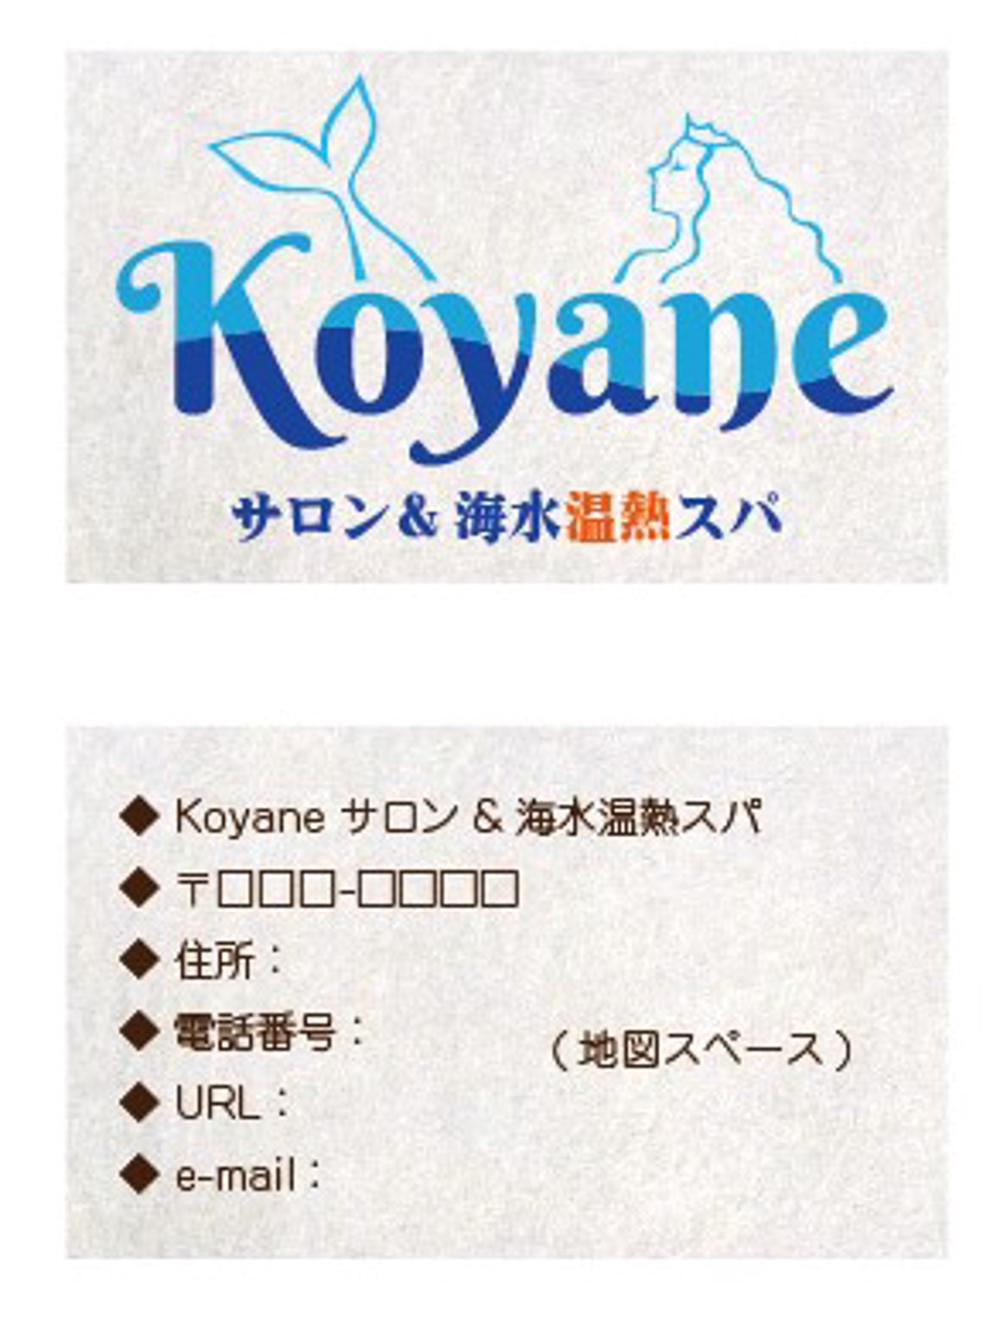 Koyane salon&kaisuionnetsu spa logo ＆ shop card.jpg